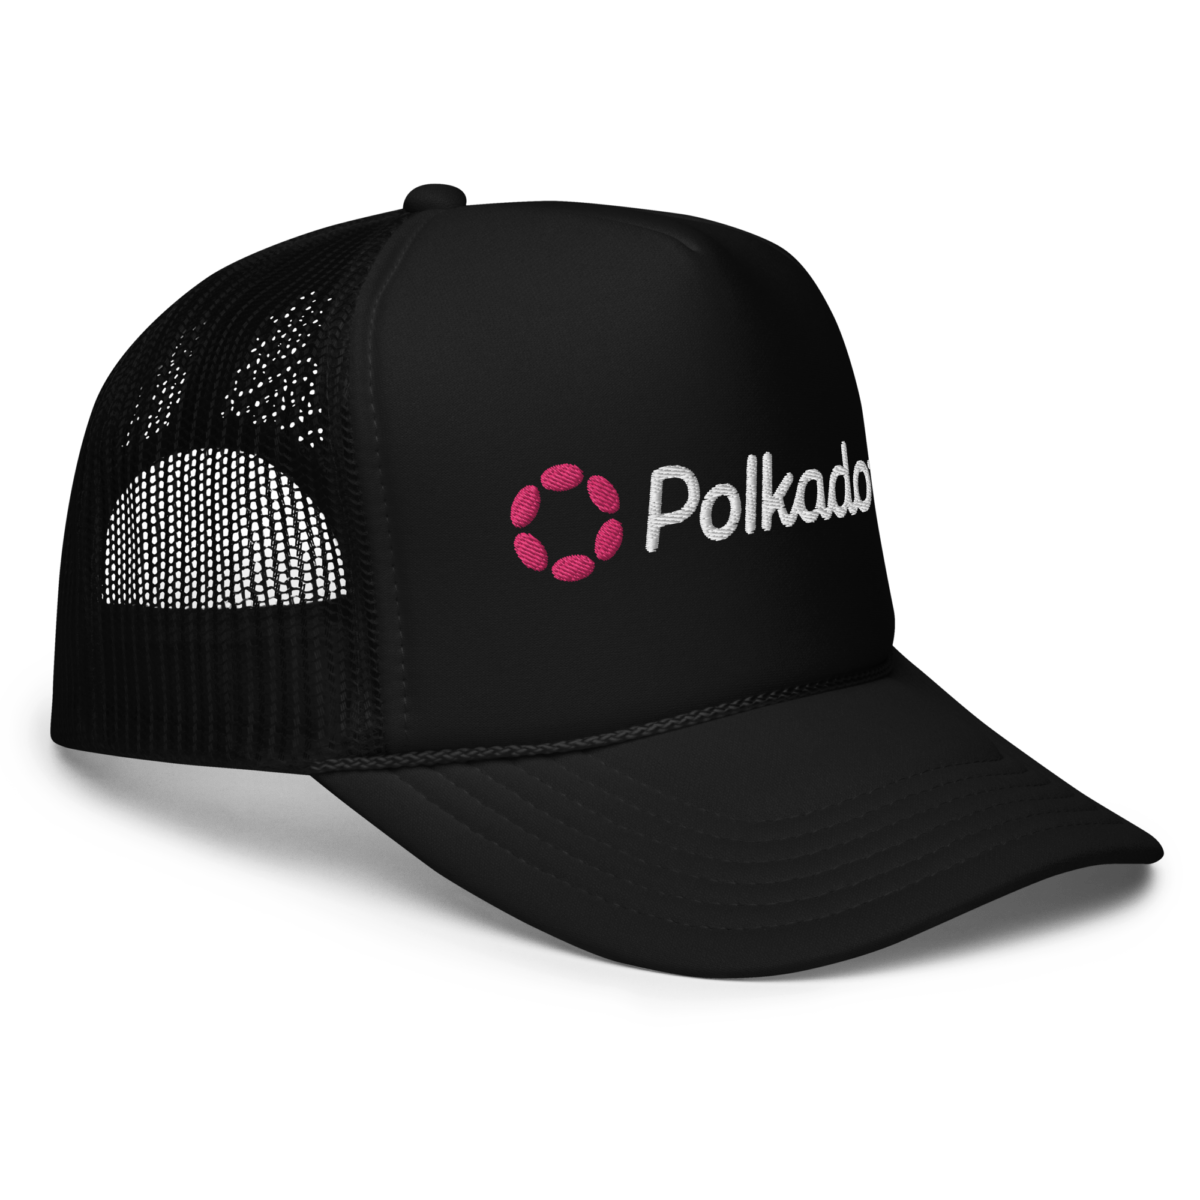 foam trucker hat black one size right front 6338b7a0d0ecd - Polkadot Foam Trucker Hat